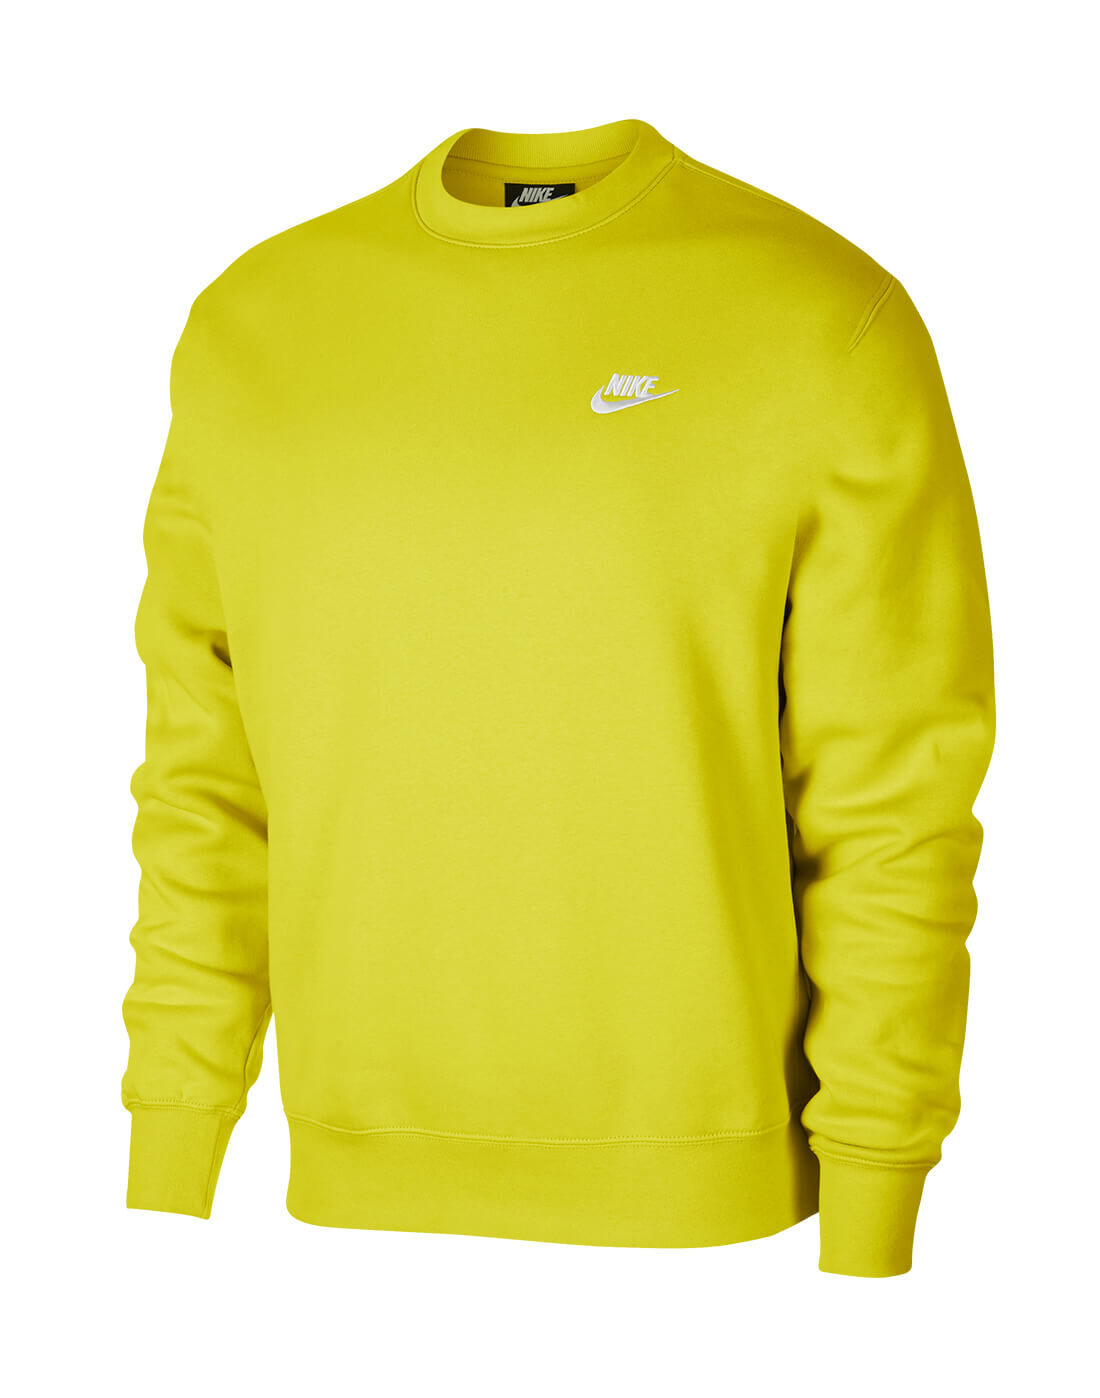 nike yellow crew neck sweatshirt